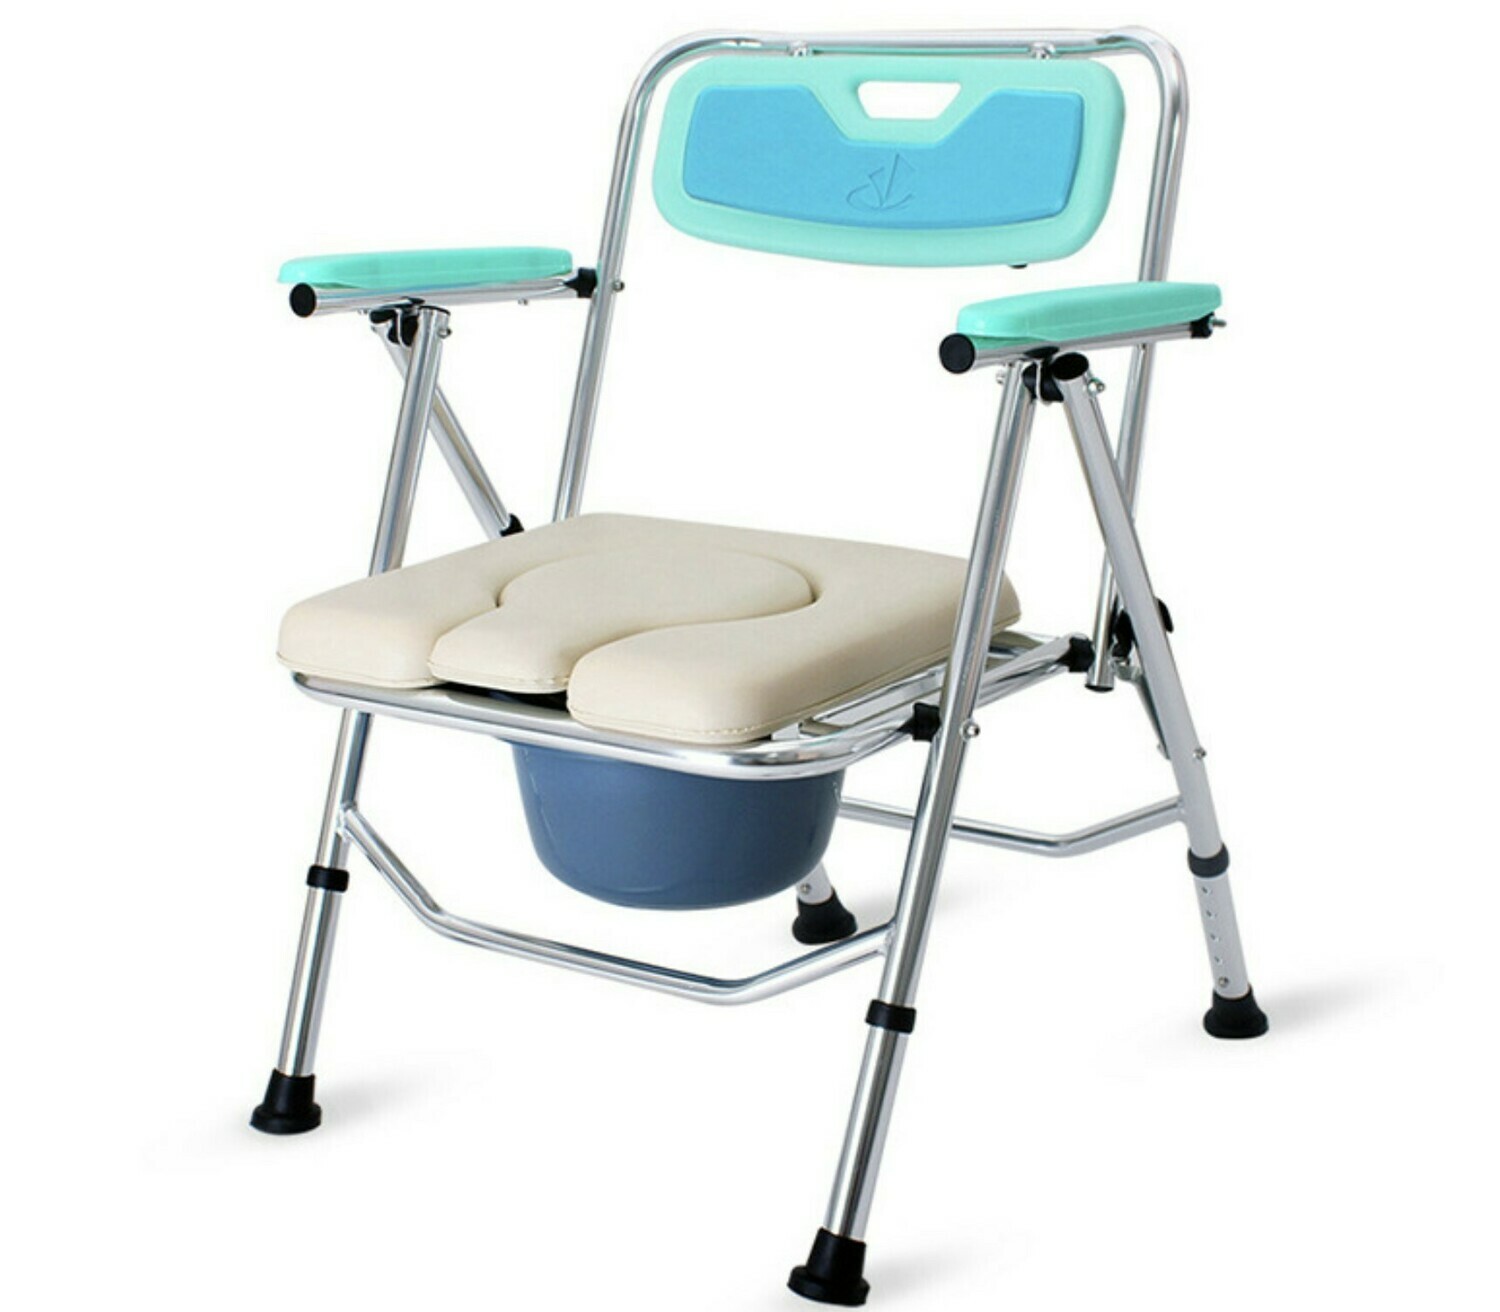 鋁合金摺疊式坐便椅 | Aluminum Foldable Commode Chair